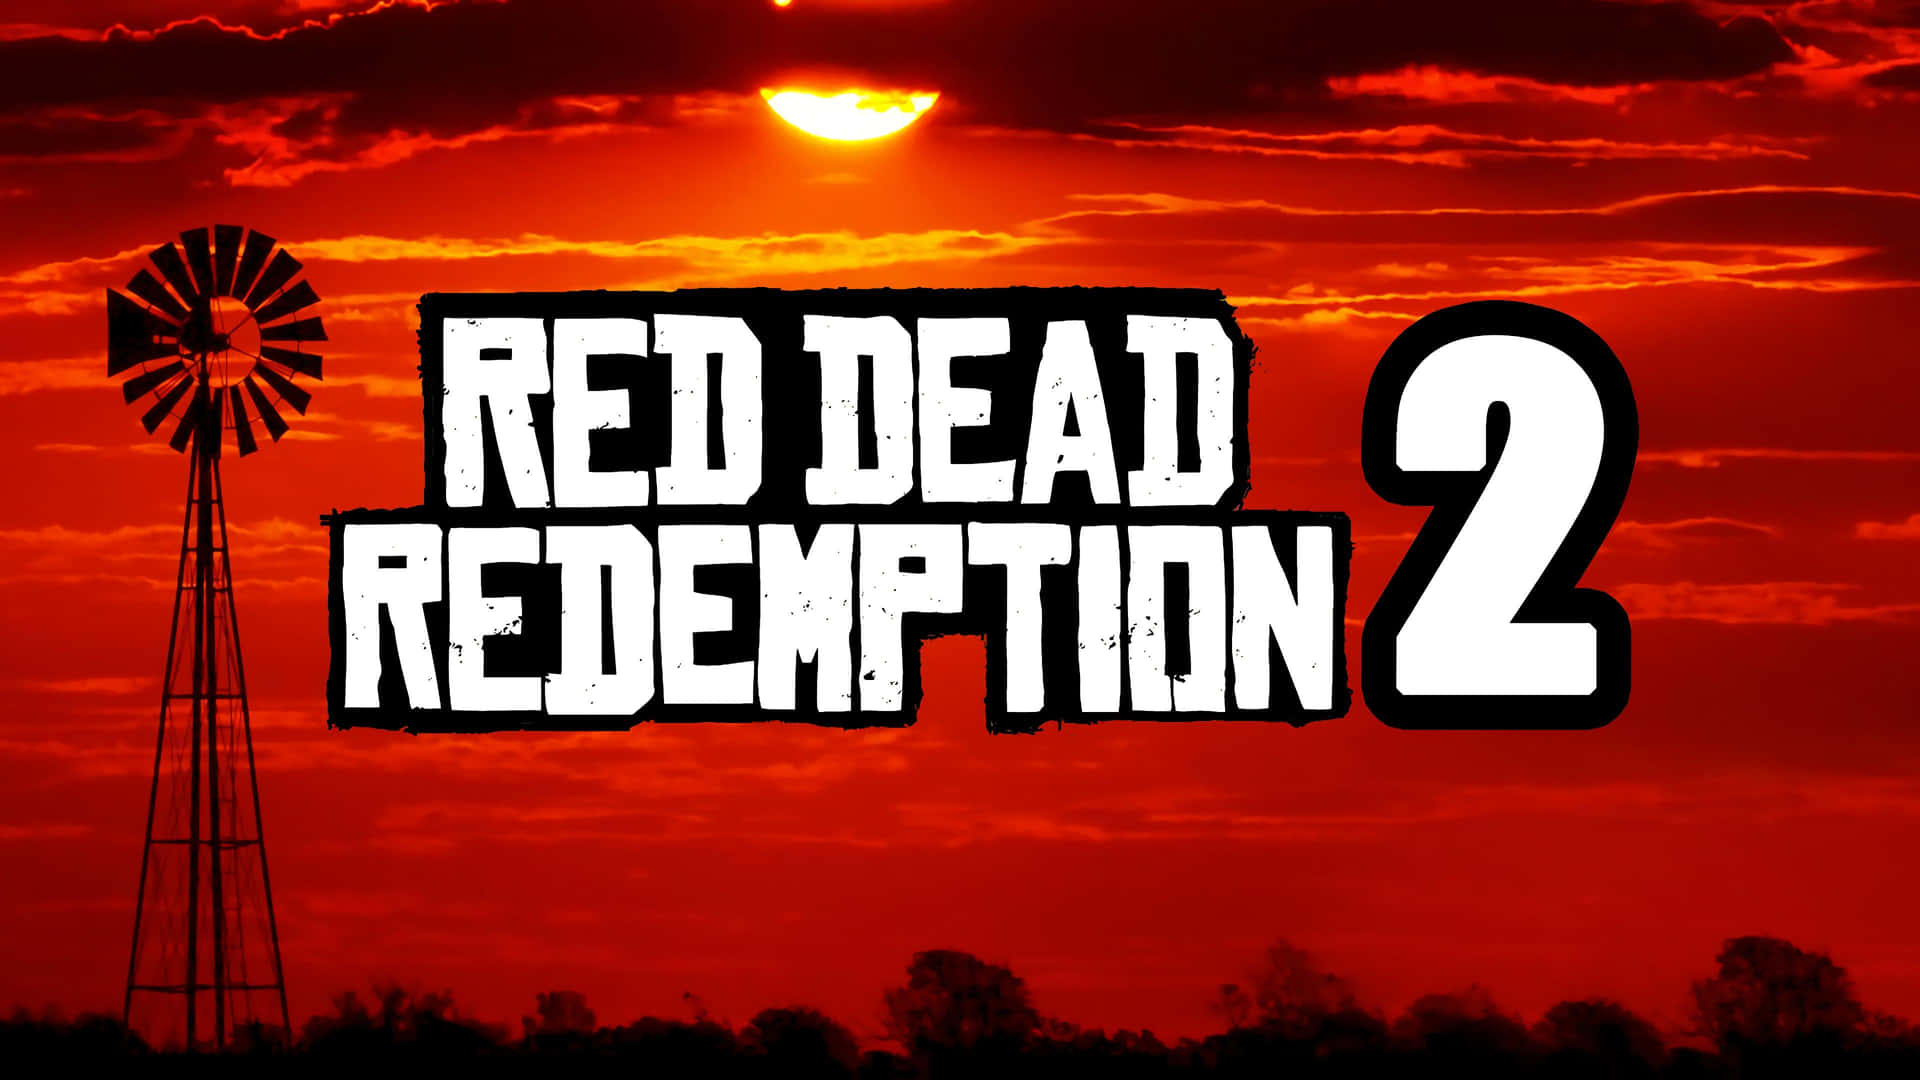 Partiverso Il Tramonto Con Red Dead Redemption 2 In Full Hd Sfondo